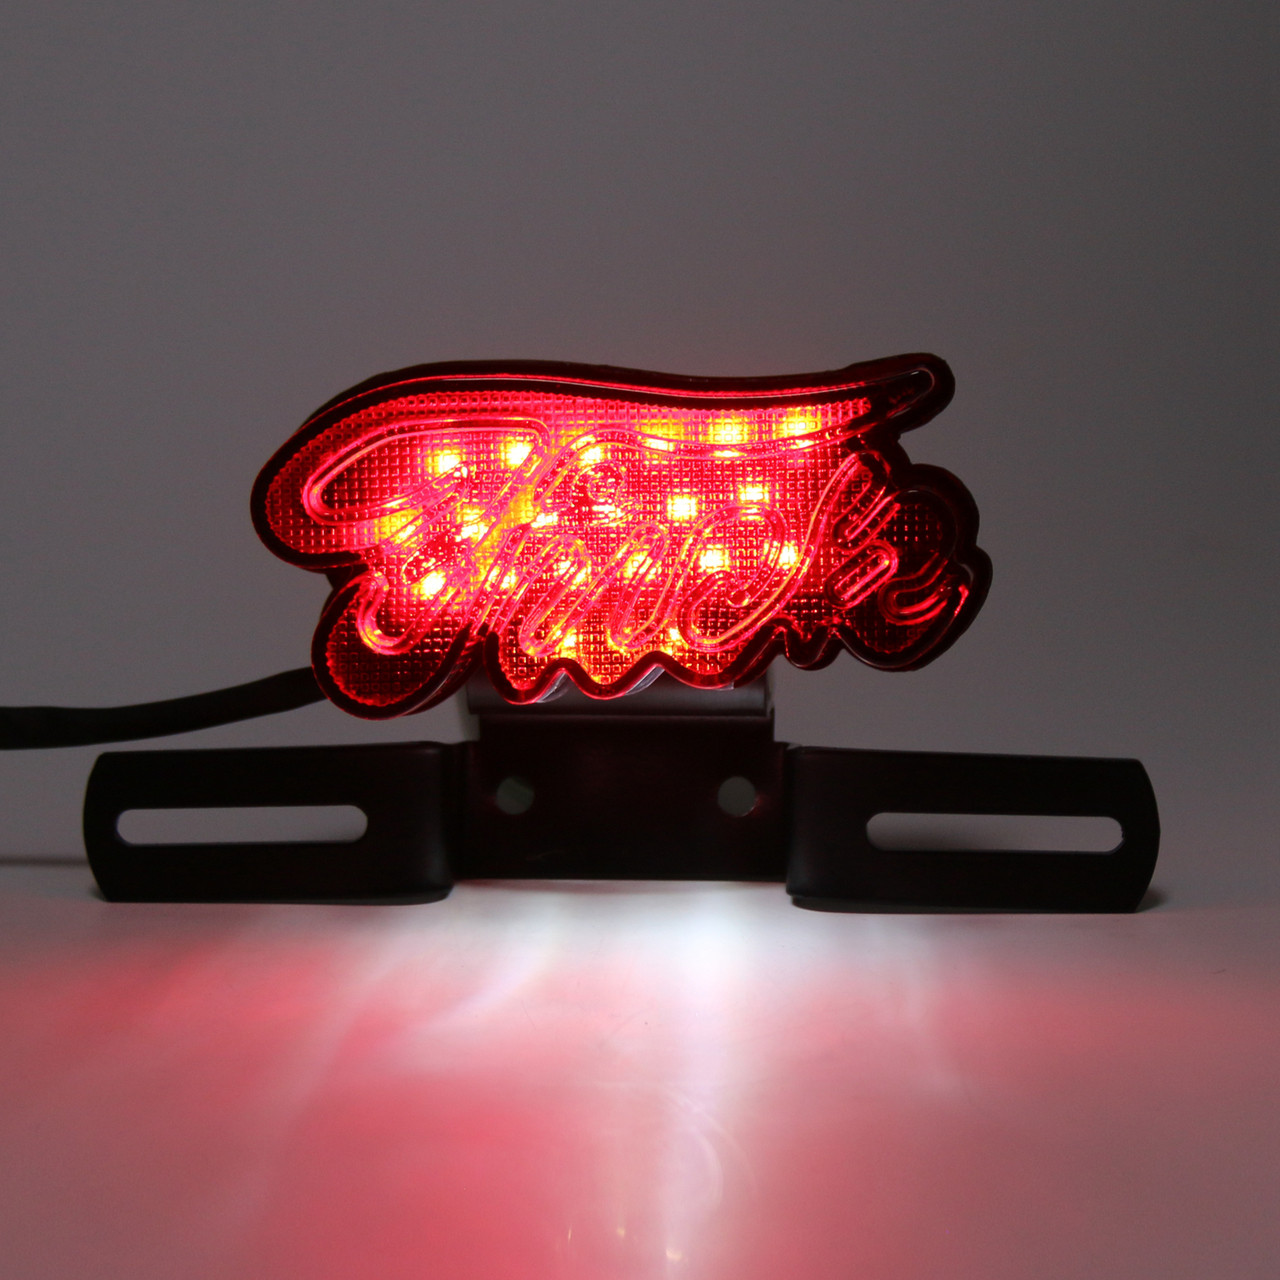 LED Brake Tail Light Running Lamp Plastic Housing For Harley Chopper Motorcycle, Red